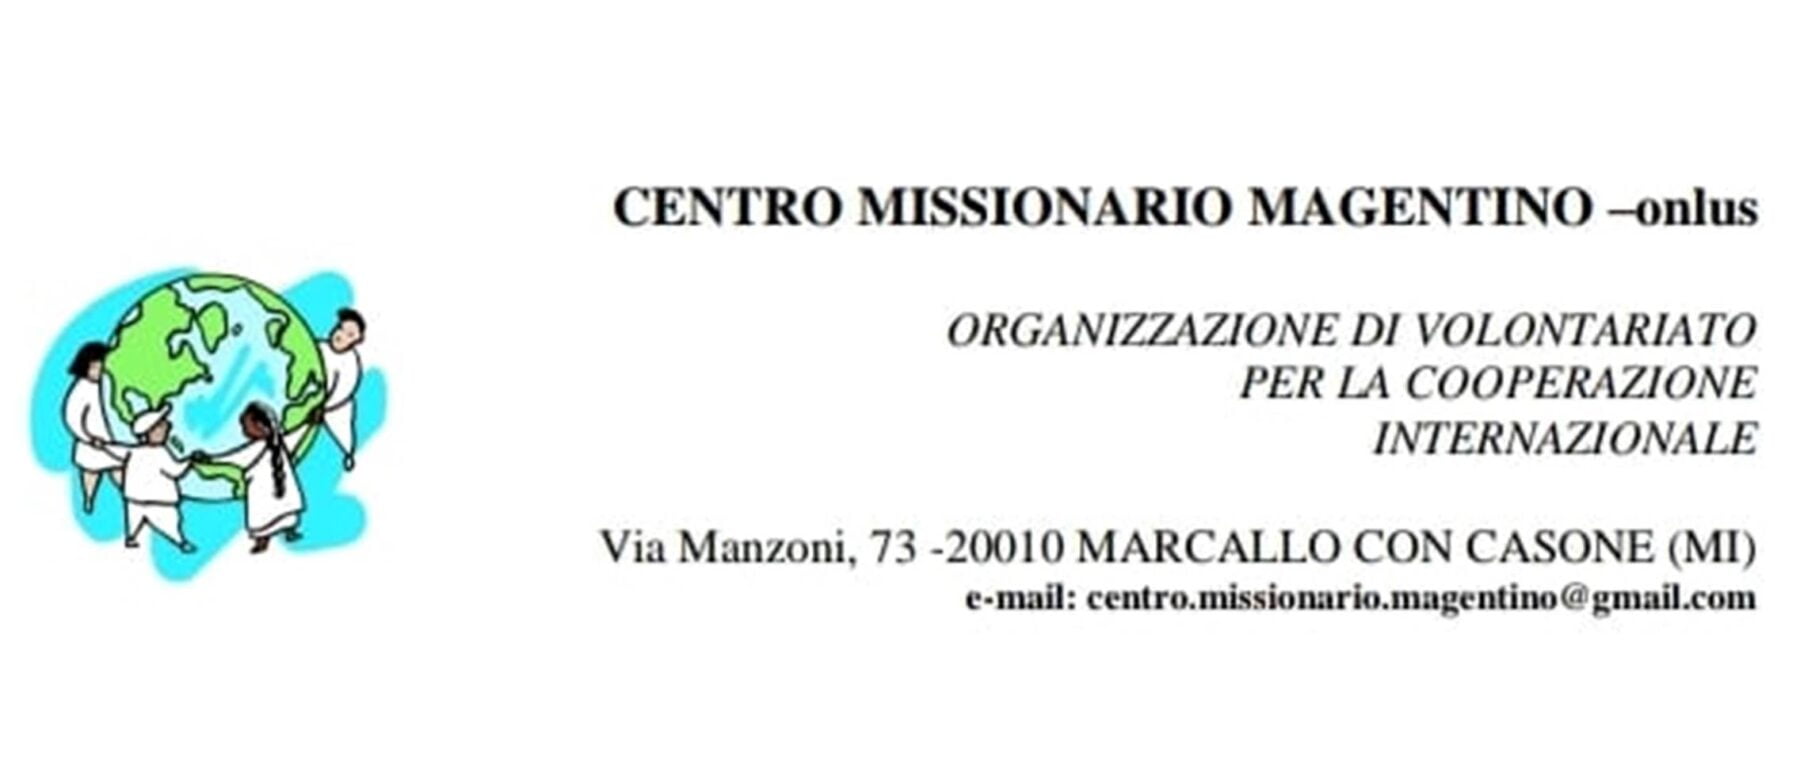 . Il Centro Missionario Magentino aderisce al fondo Borse-Lavoro - 19/02/2021